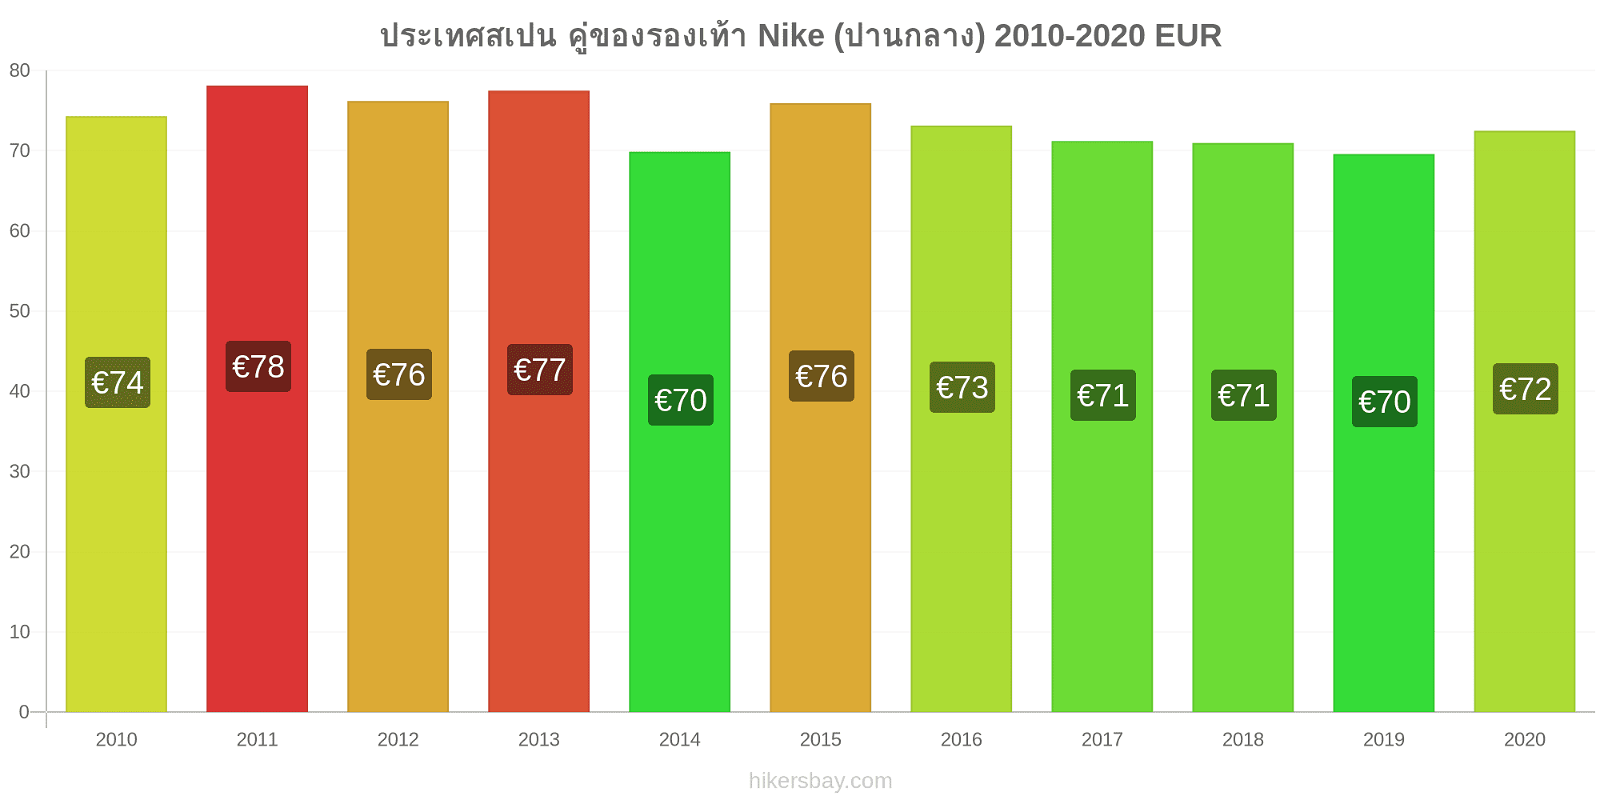 ประเทศสเปน การเปลี่ยนแปลงราคา คู่ของรองเท้า Nike (ปานกลาง) hikersbay.com